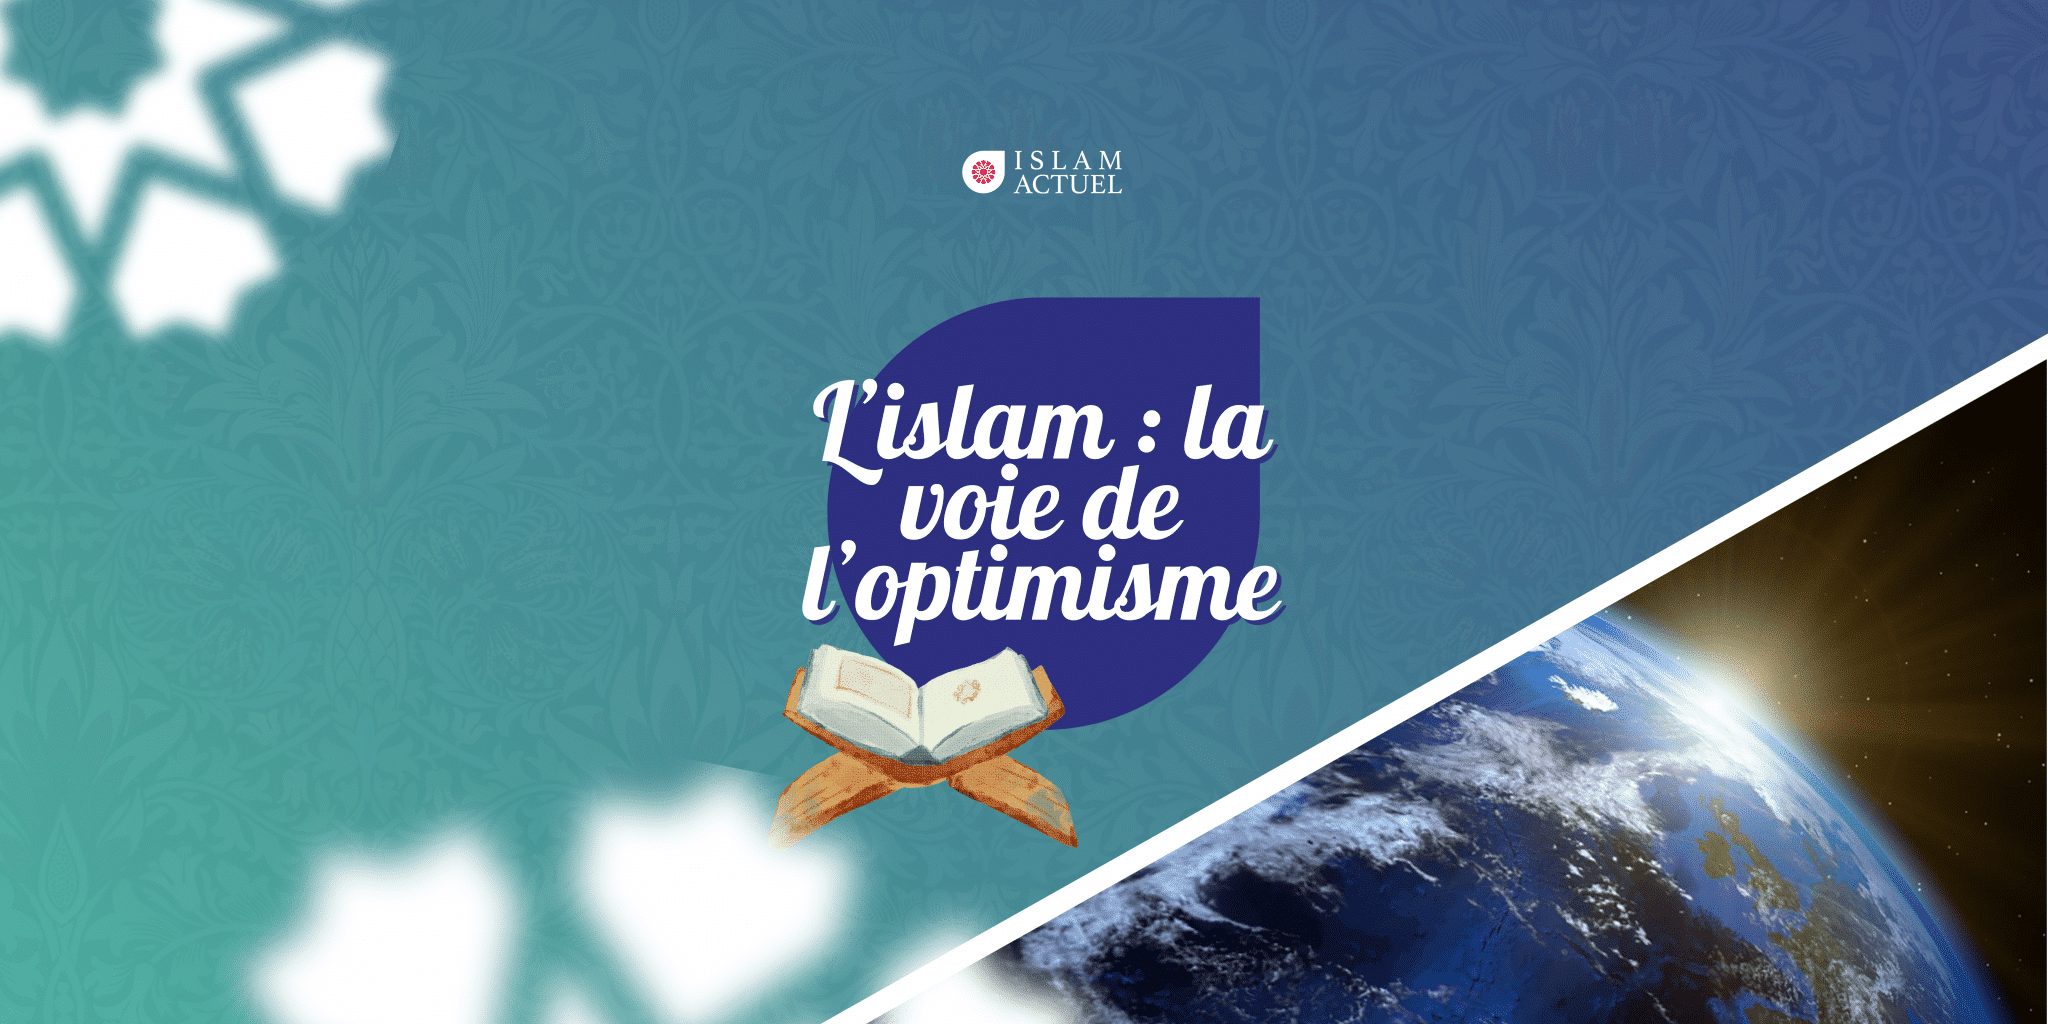 Featured image for “L’islam : la voie de l’optimisme”